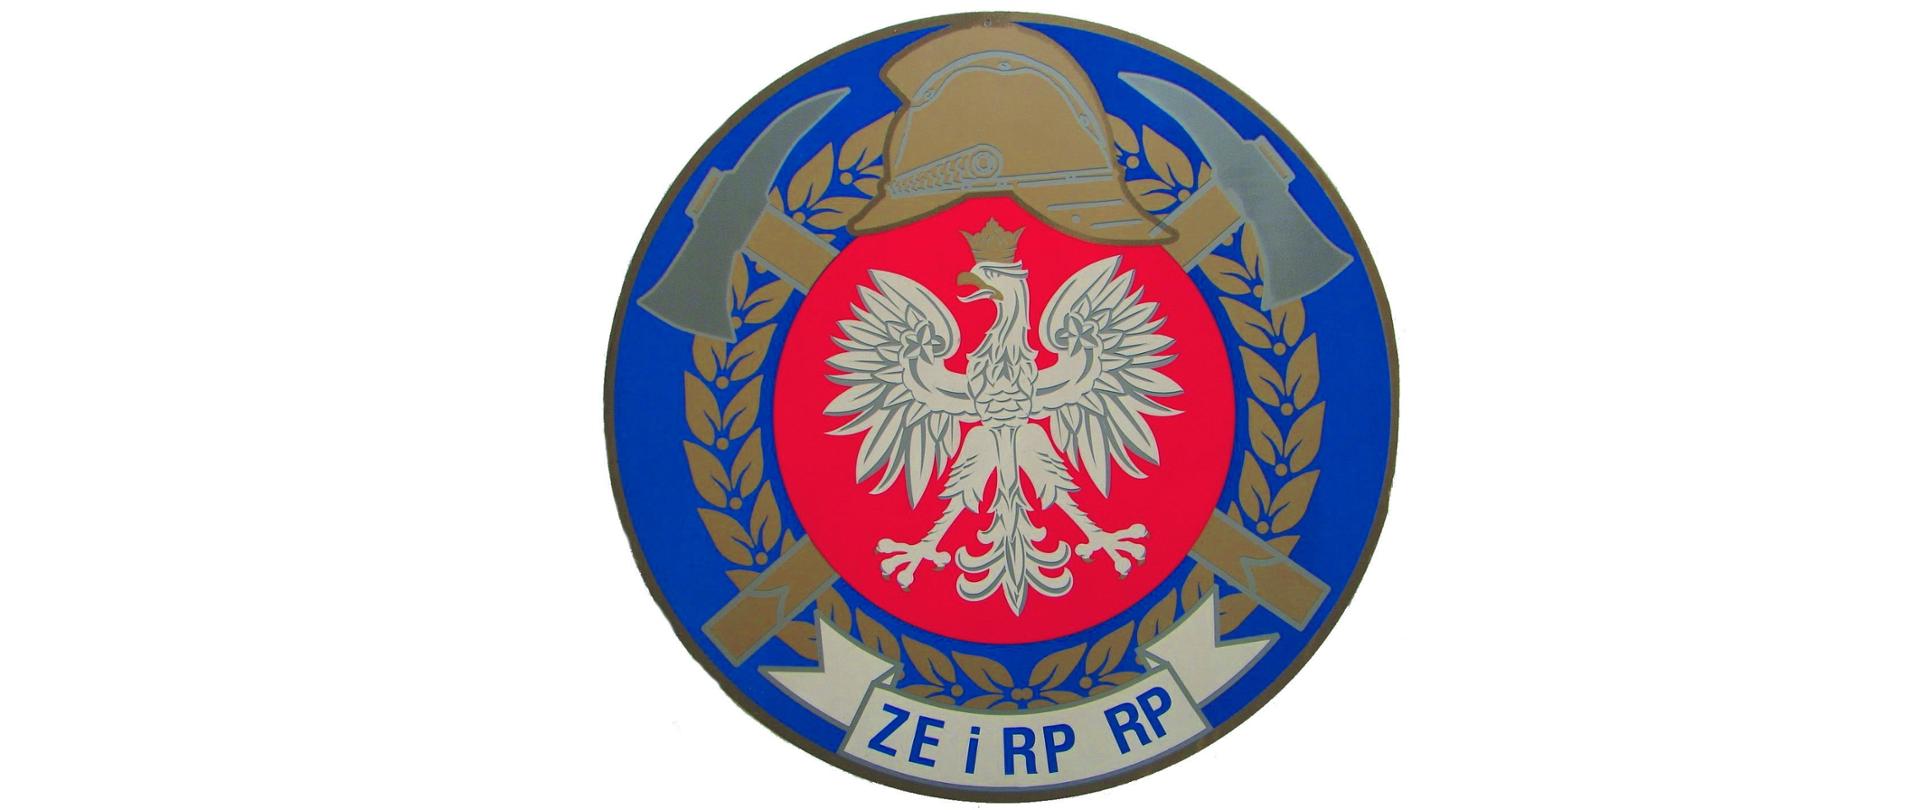 Na zdjęciu widoczne jest Logo Związku Emerytów i Rencistów Pożarnictwa RP